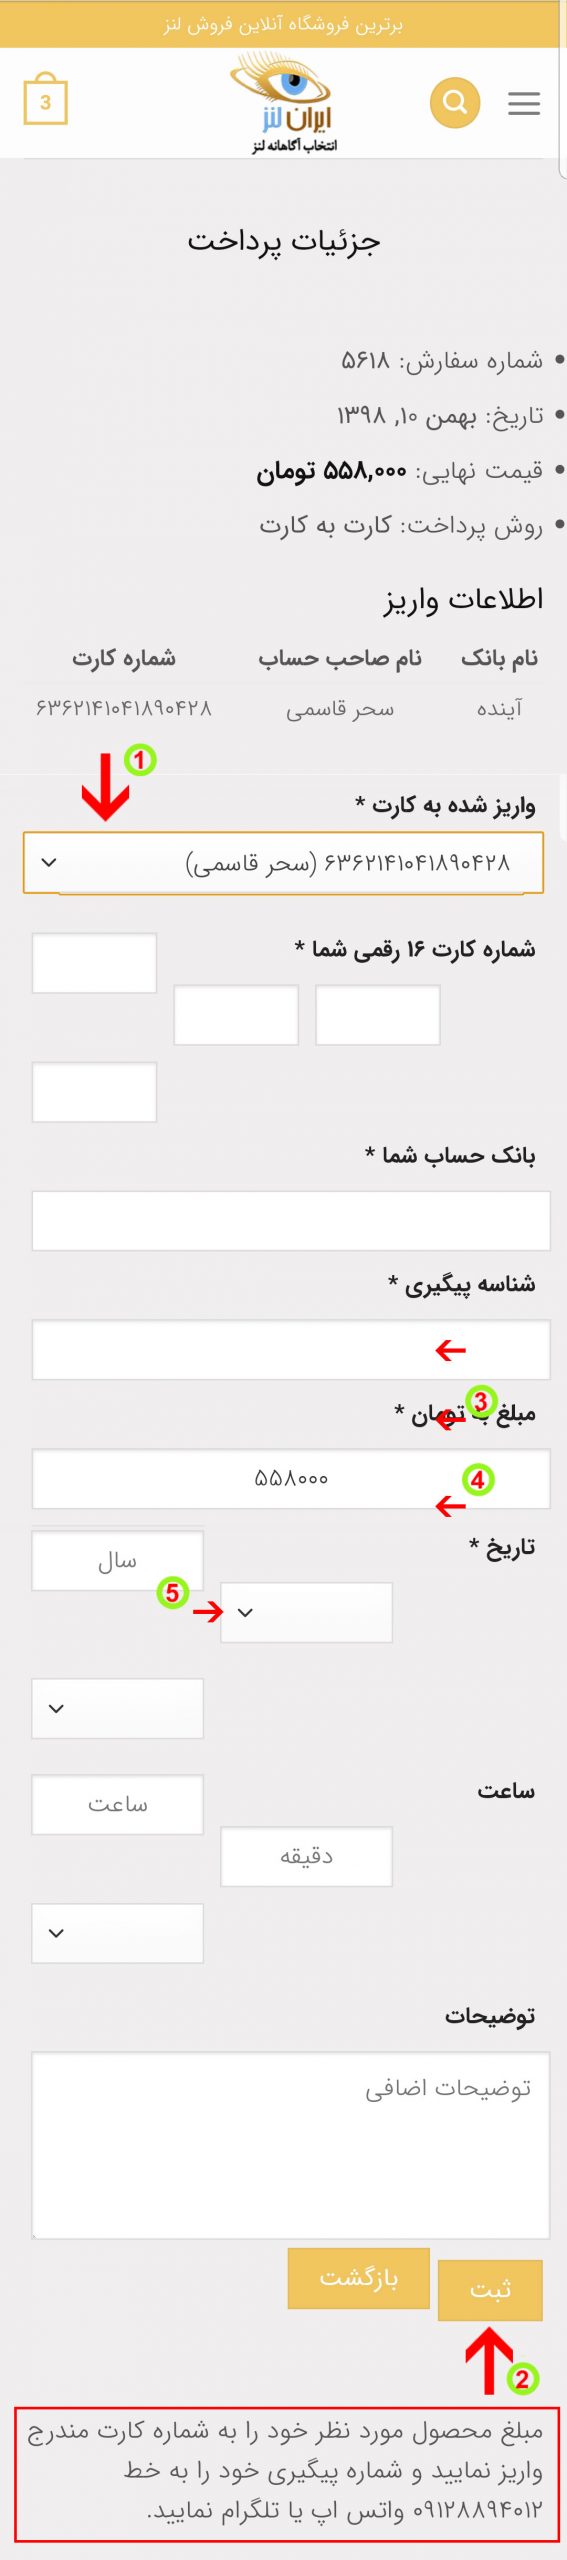 آموزش پرداخت کارت به کارت از طریق موبایل در سایت ایران لنز